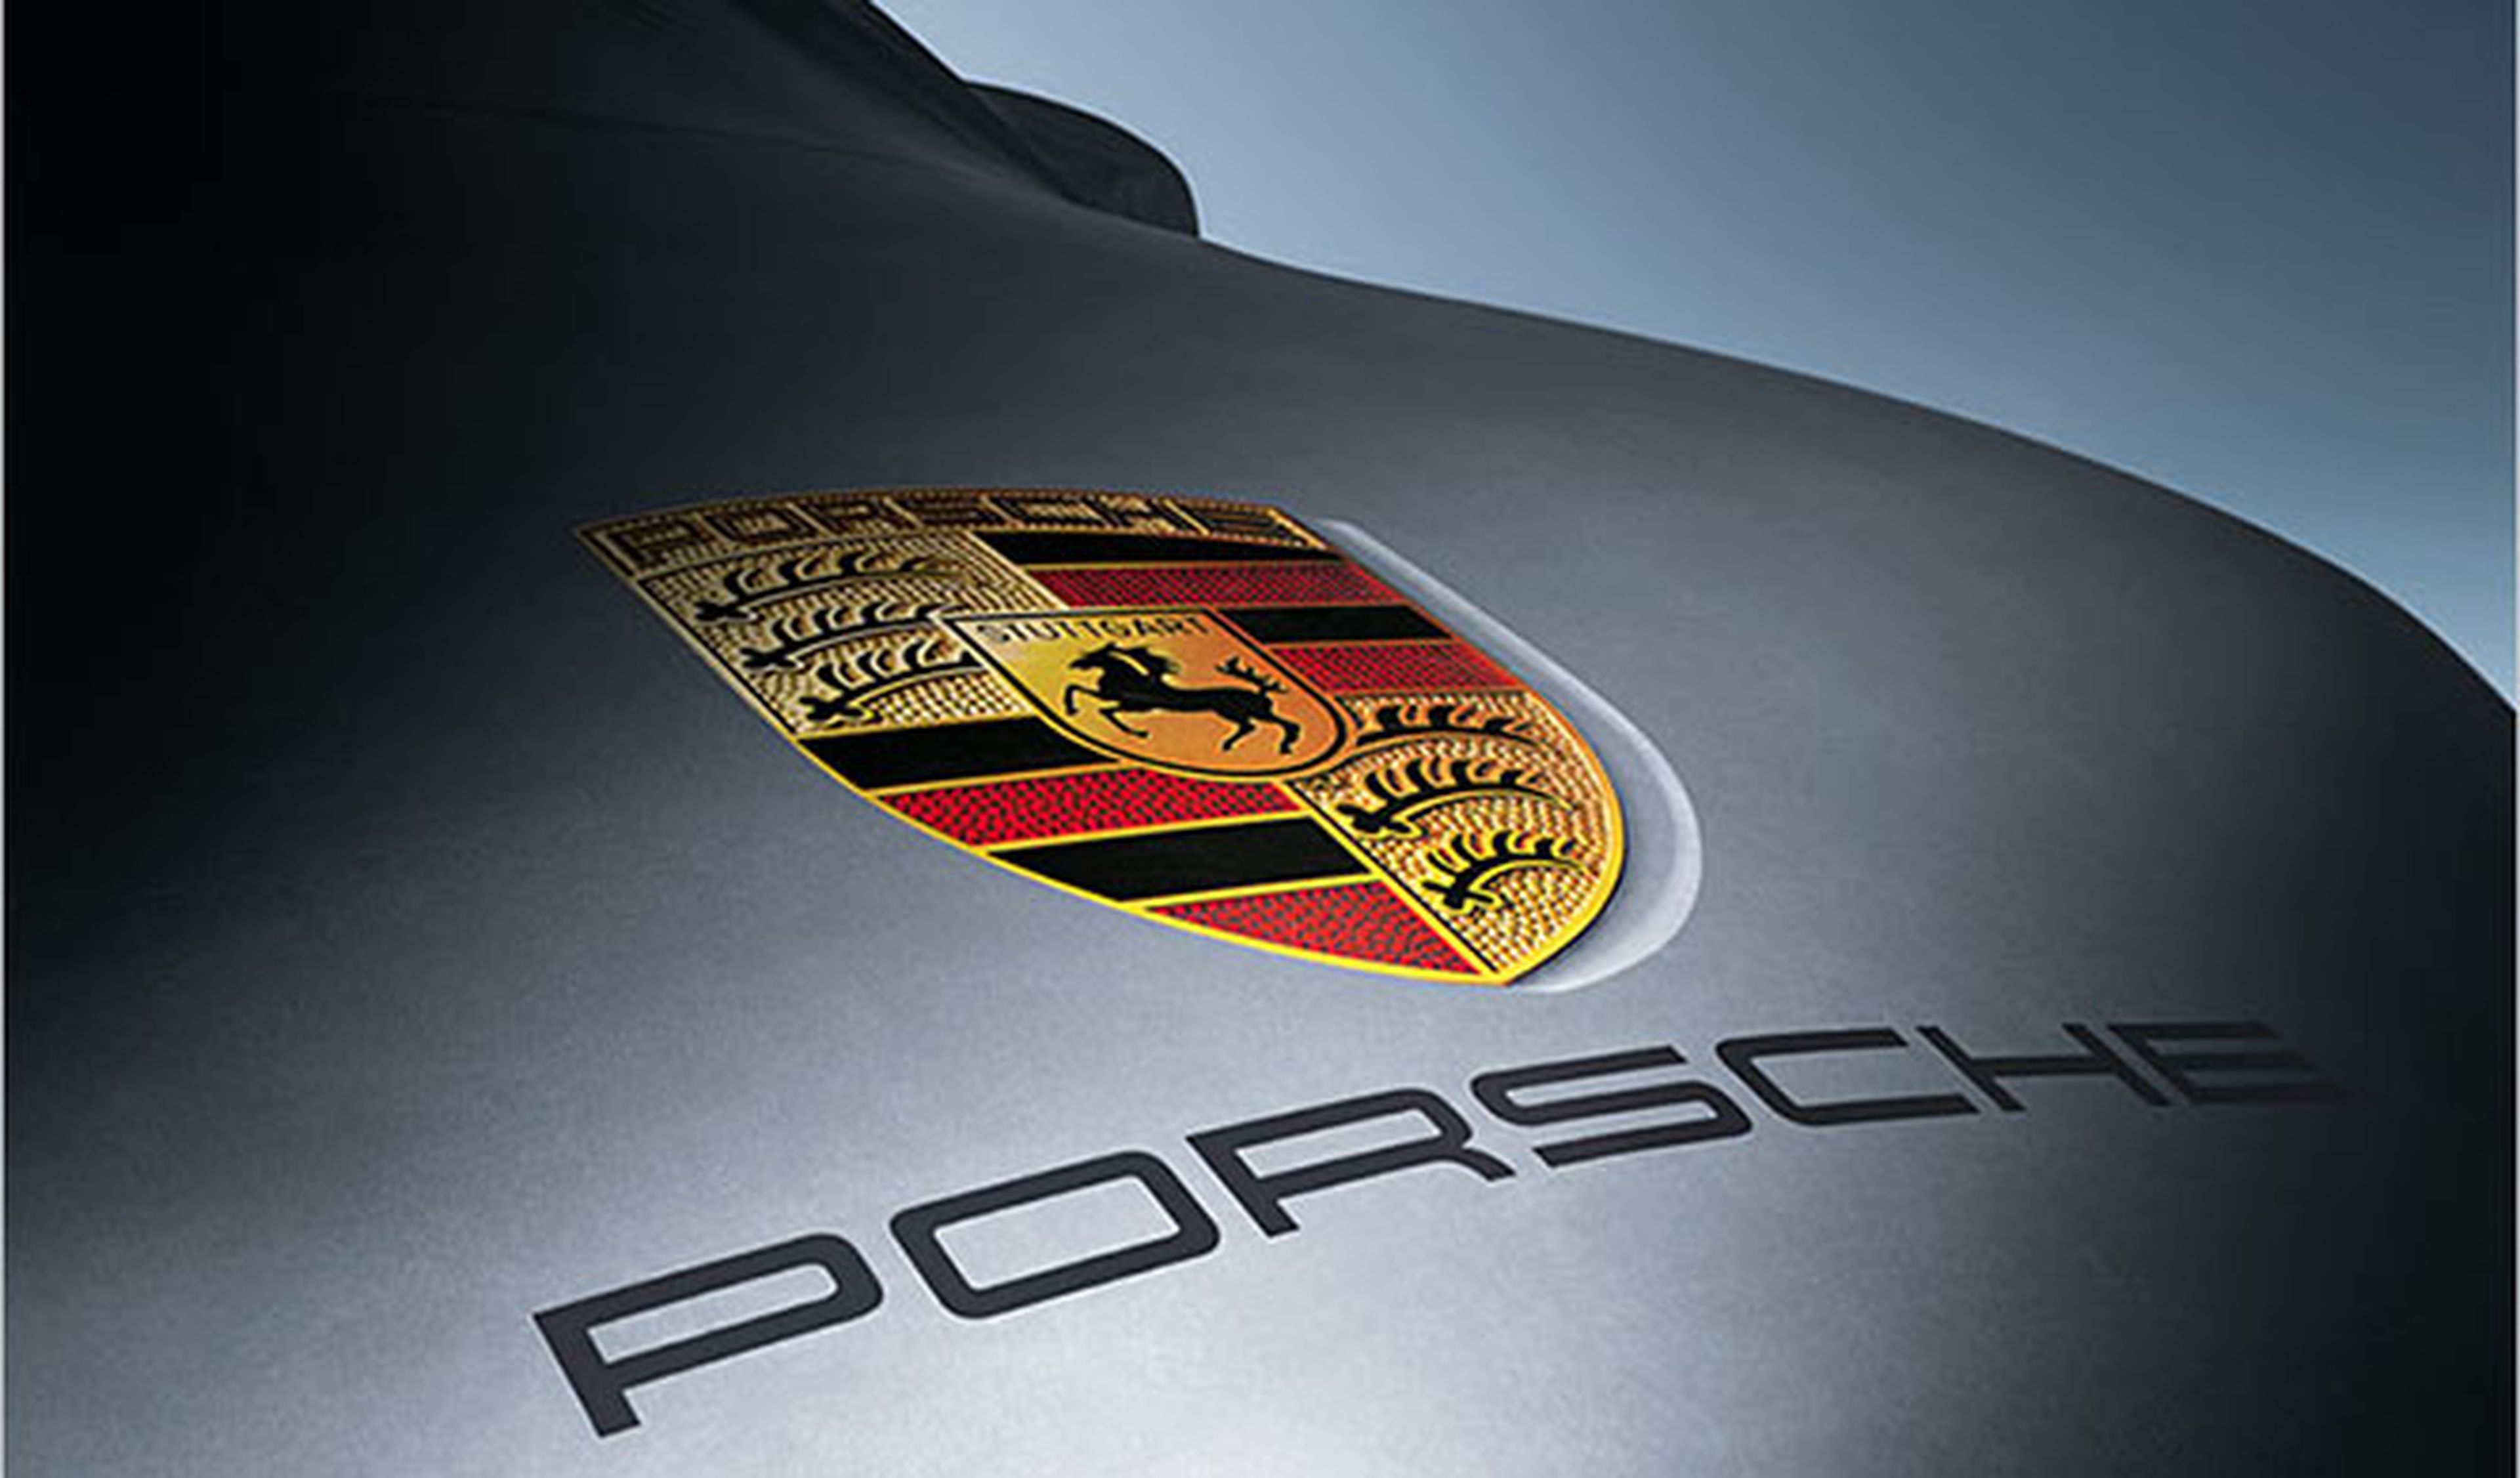 ¡El nuevo Porsche 911 ya rueda en pruebas!